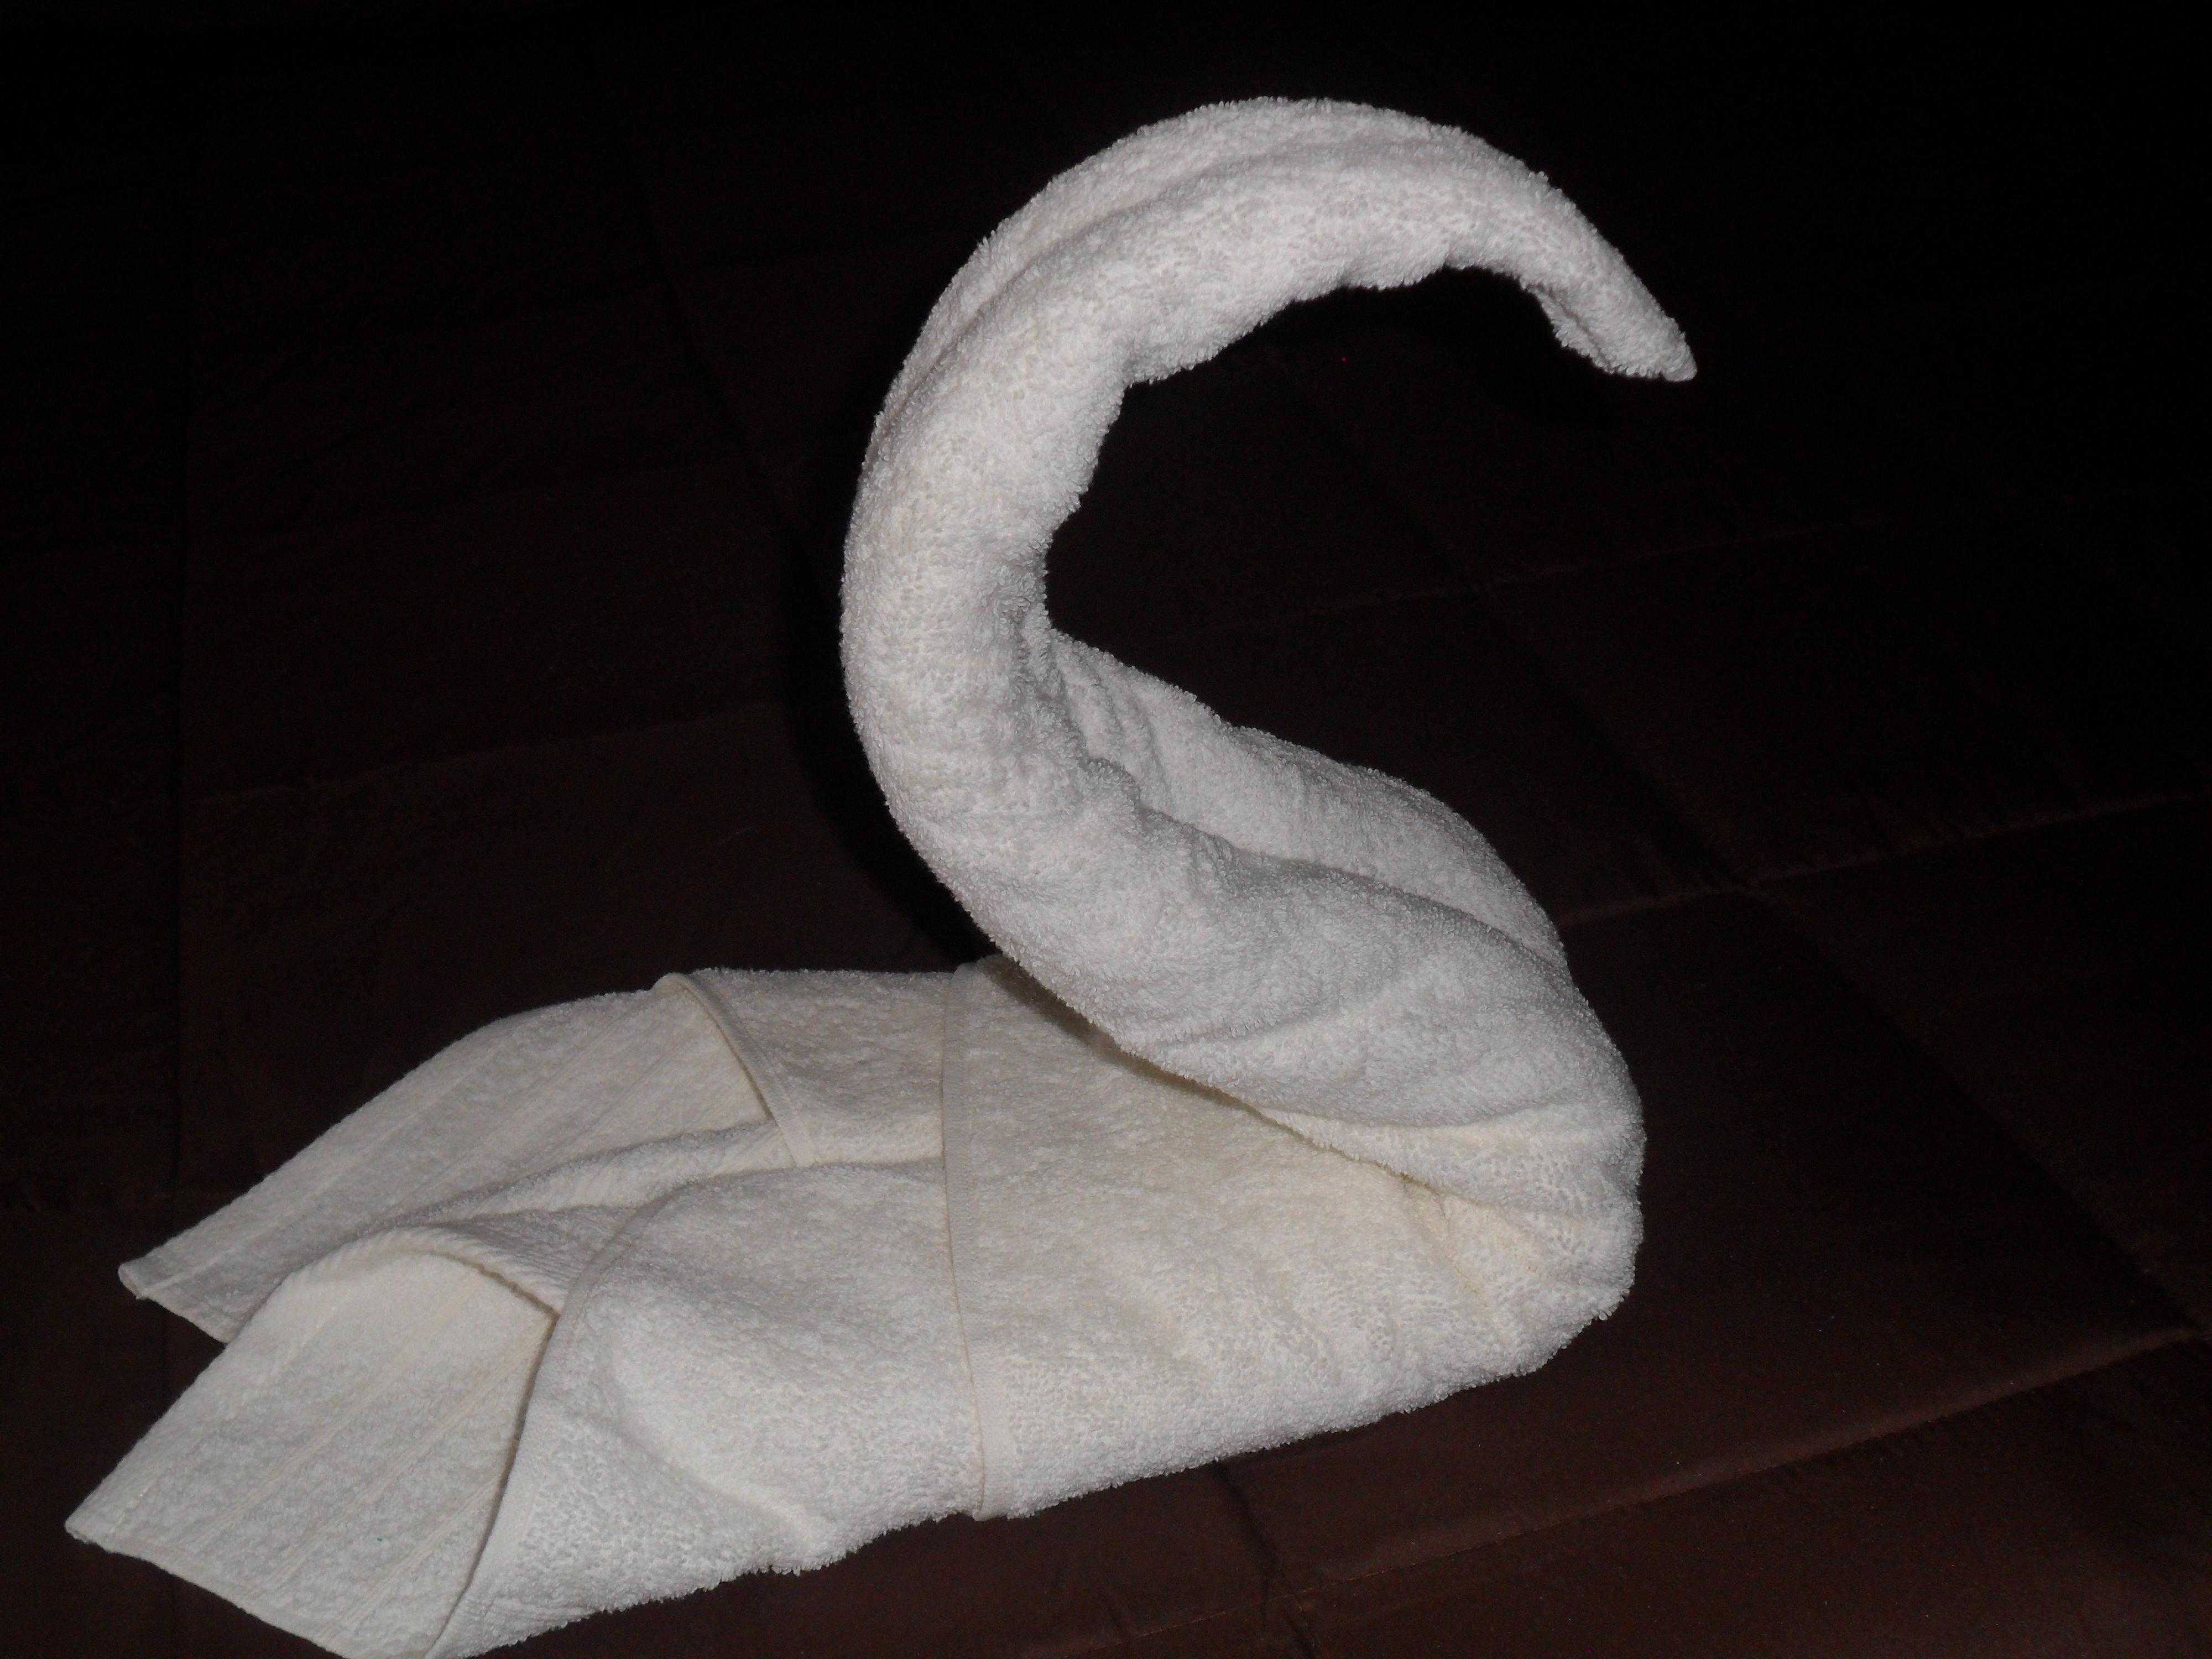 Полотенце: полотенце в подарок, как сложить полотенце, фигуры из полотенец